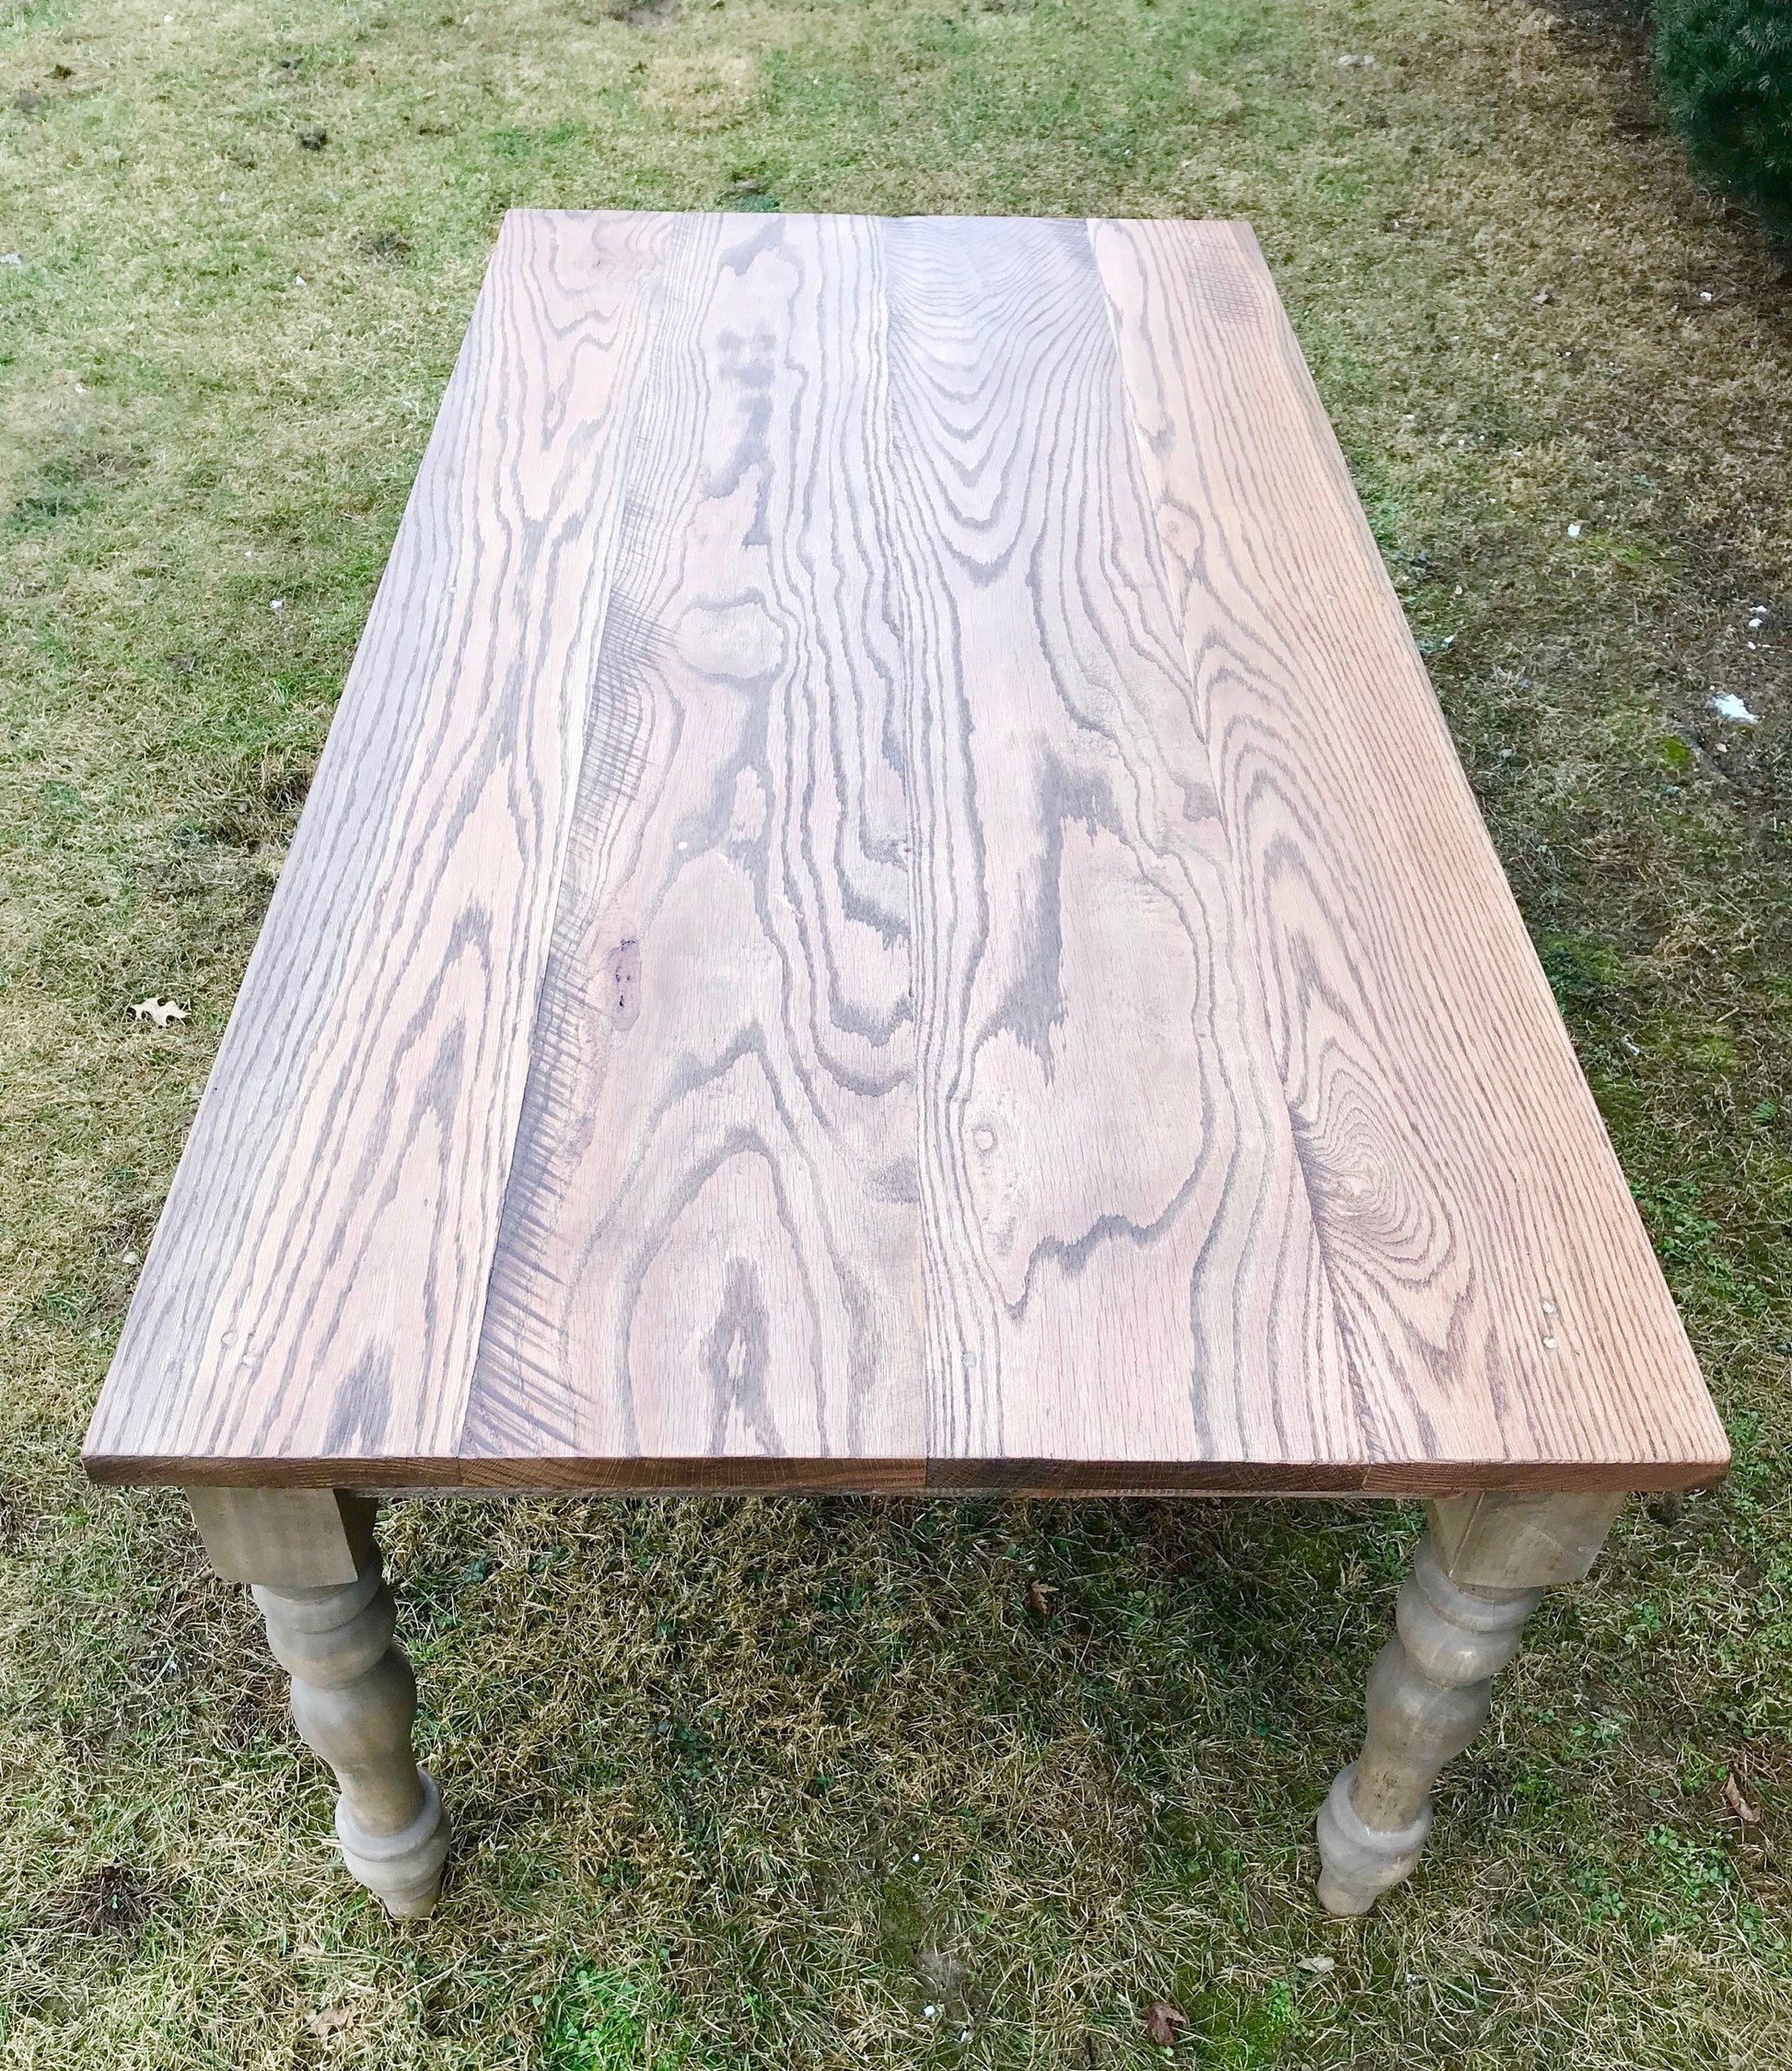 OAK Farm Table, Hardwood Farmhouse Table, Reclaimed Wood Table, Farm Table, Rustic Farm Table, Custom Farmhouse Table